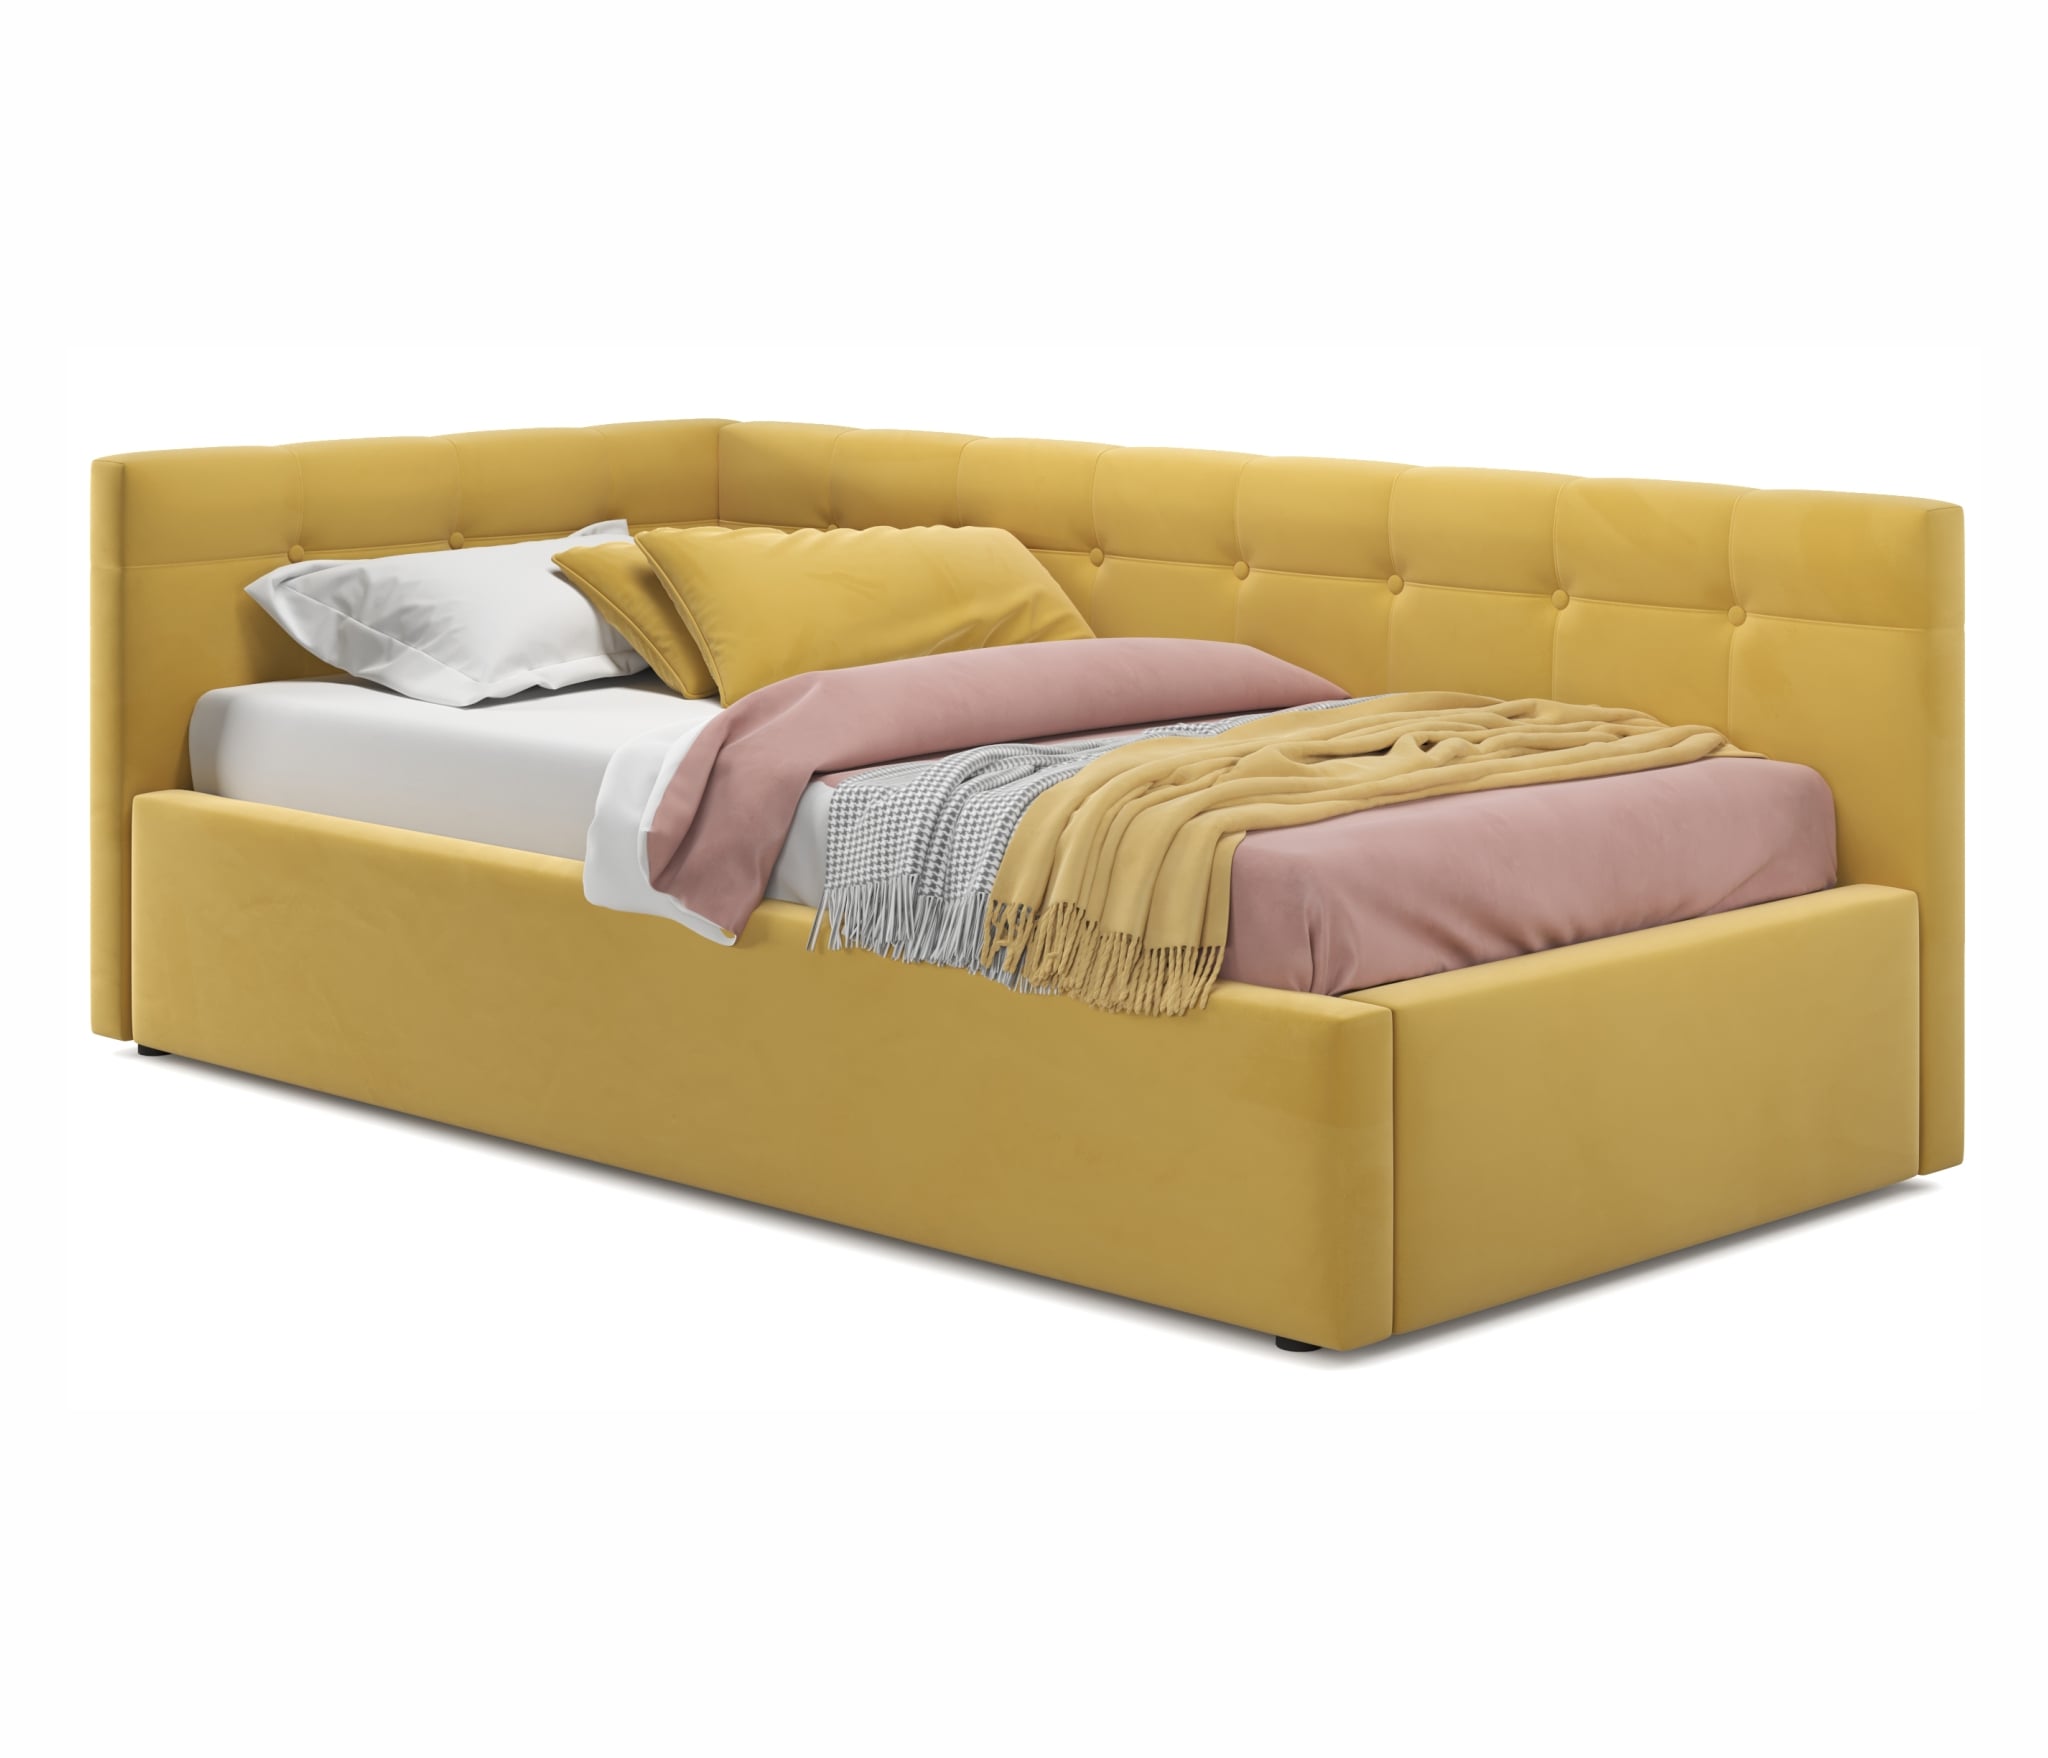 Купить односпальная кровать-тахта bonna 900 желтая с подъемным механизмом | ZEPPELIN MOBILI